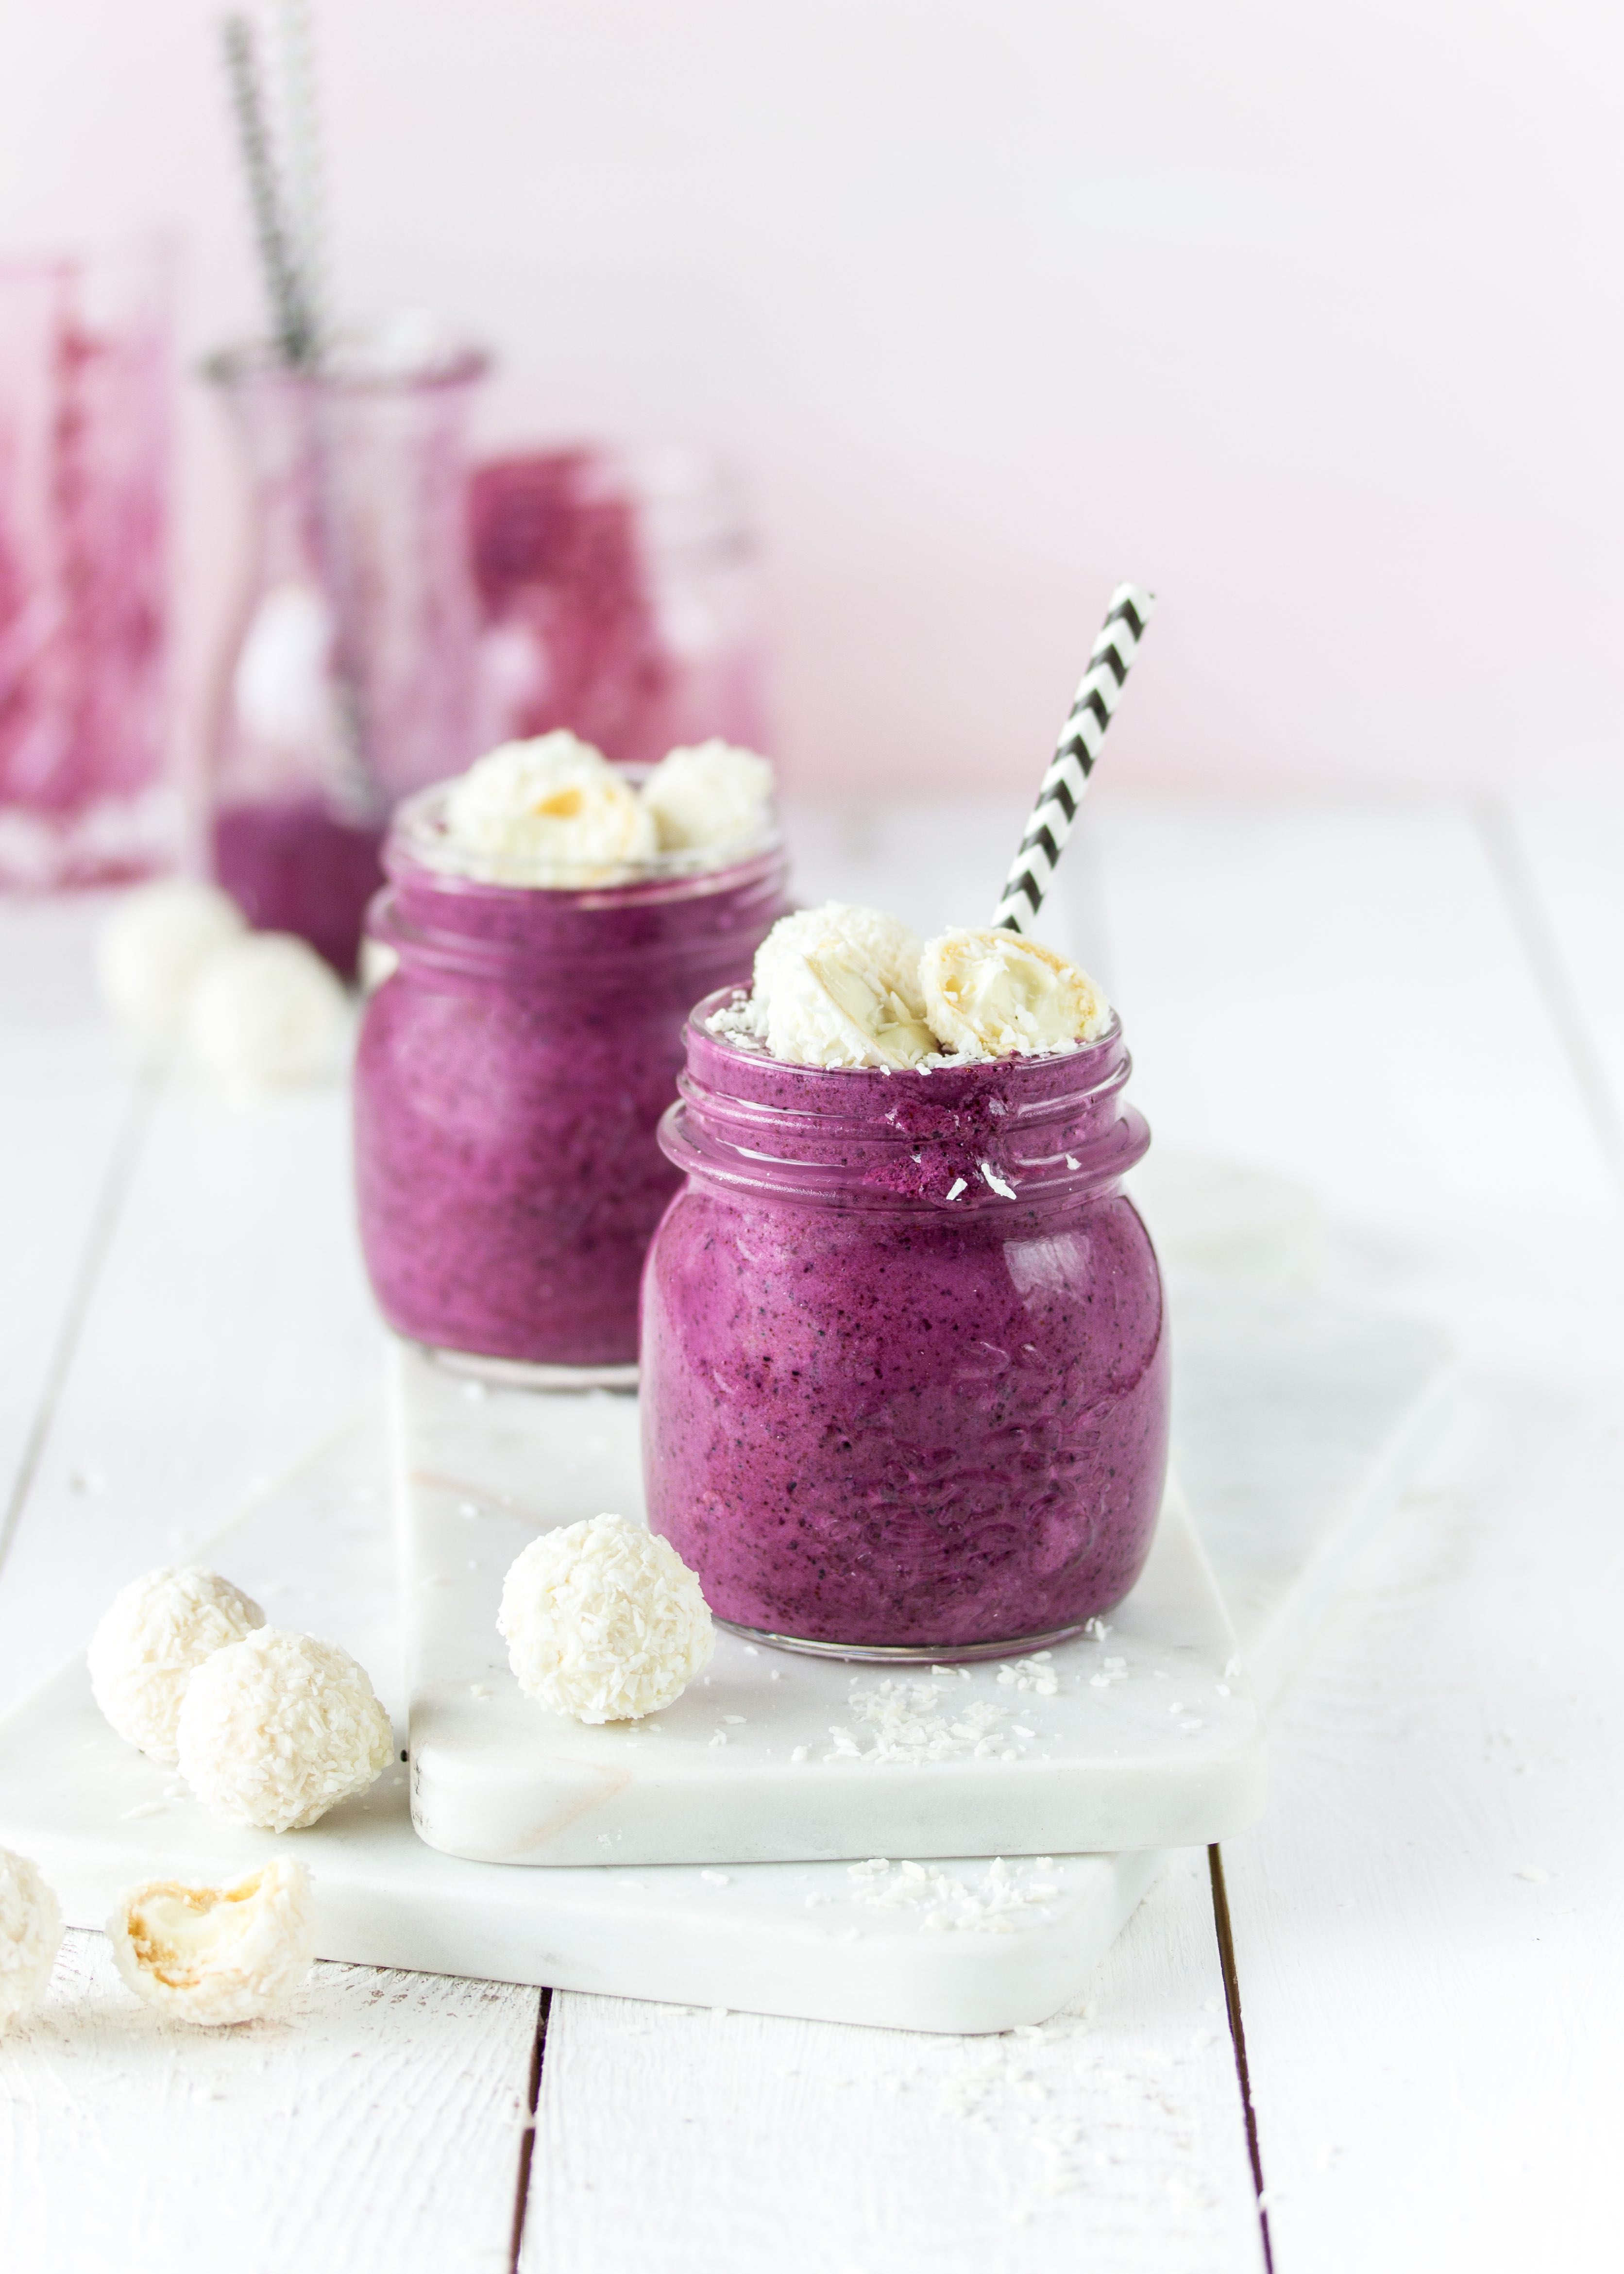 Smoothie Rezept: Blaubeere Kokos einfach lecker gesund #smoothie #blueberry #kokos #coconut #healthy | Emma´s Lieblingsstücke